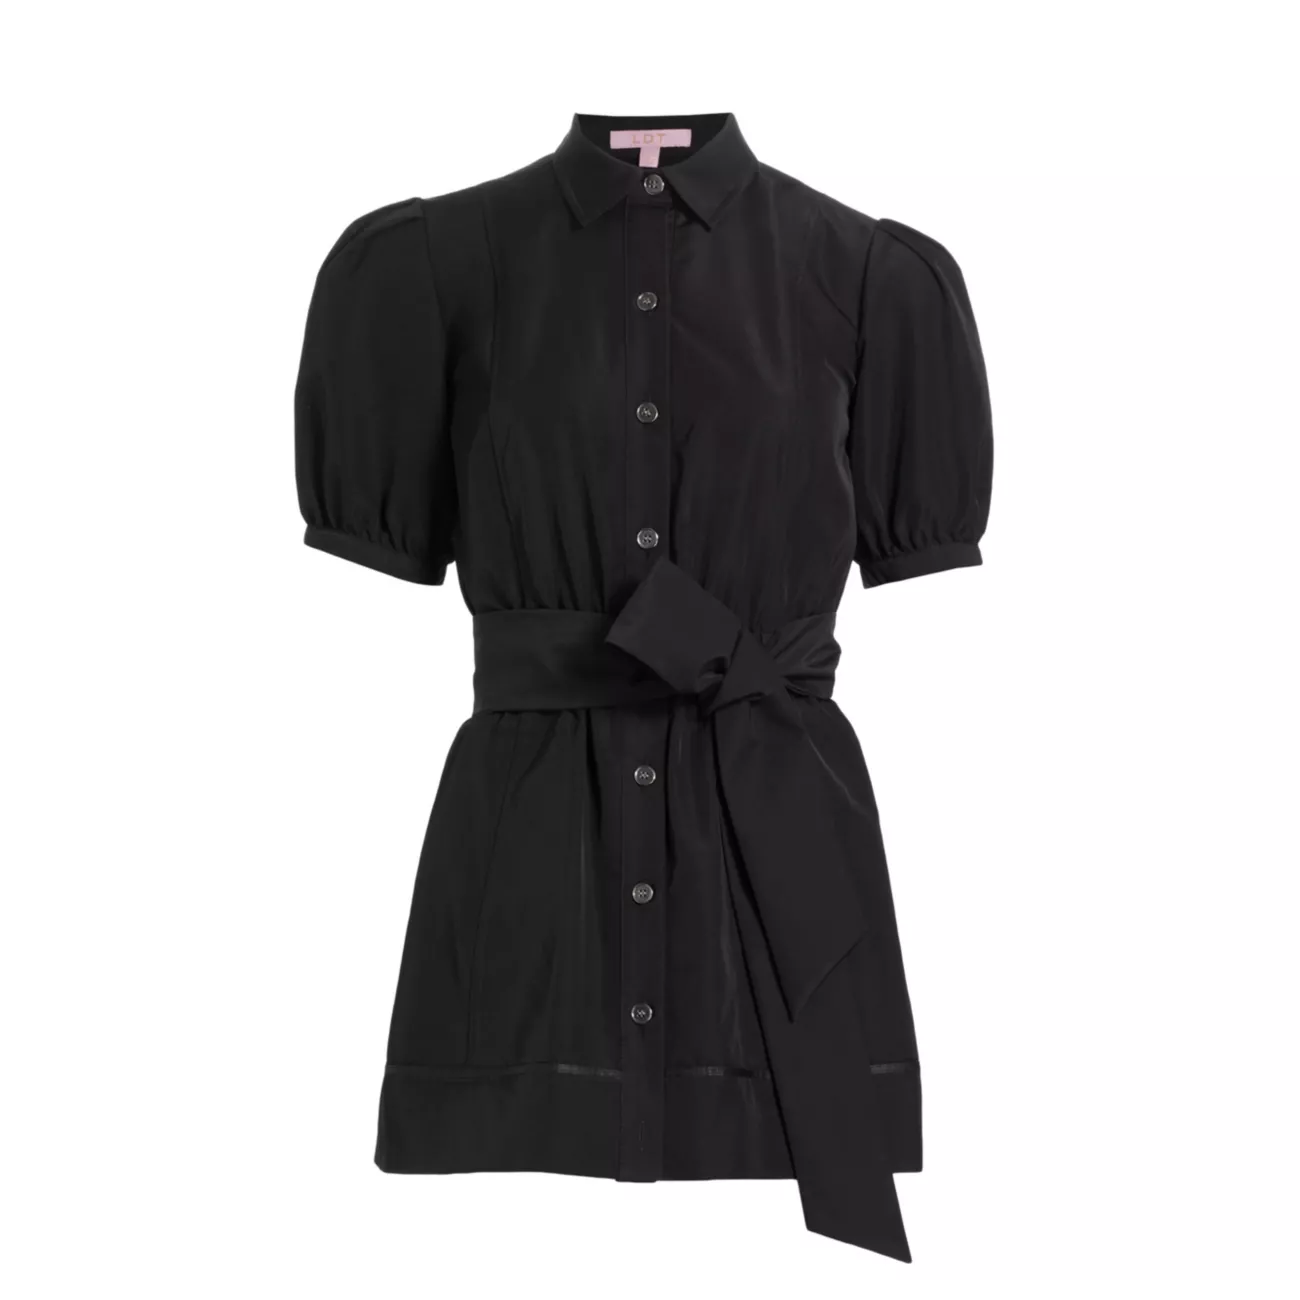 Мини-платье-рубашка Ainsley с завязкой на талии LDT